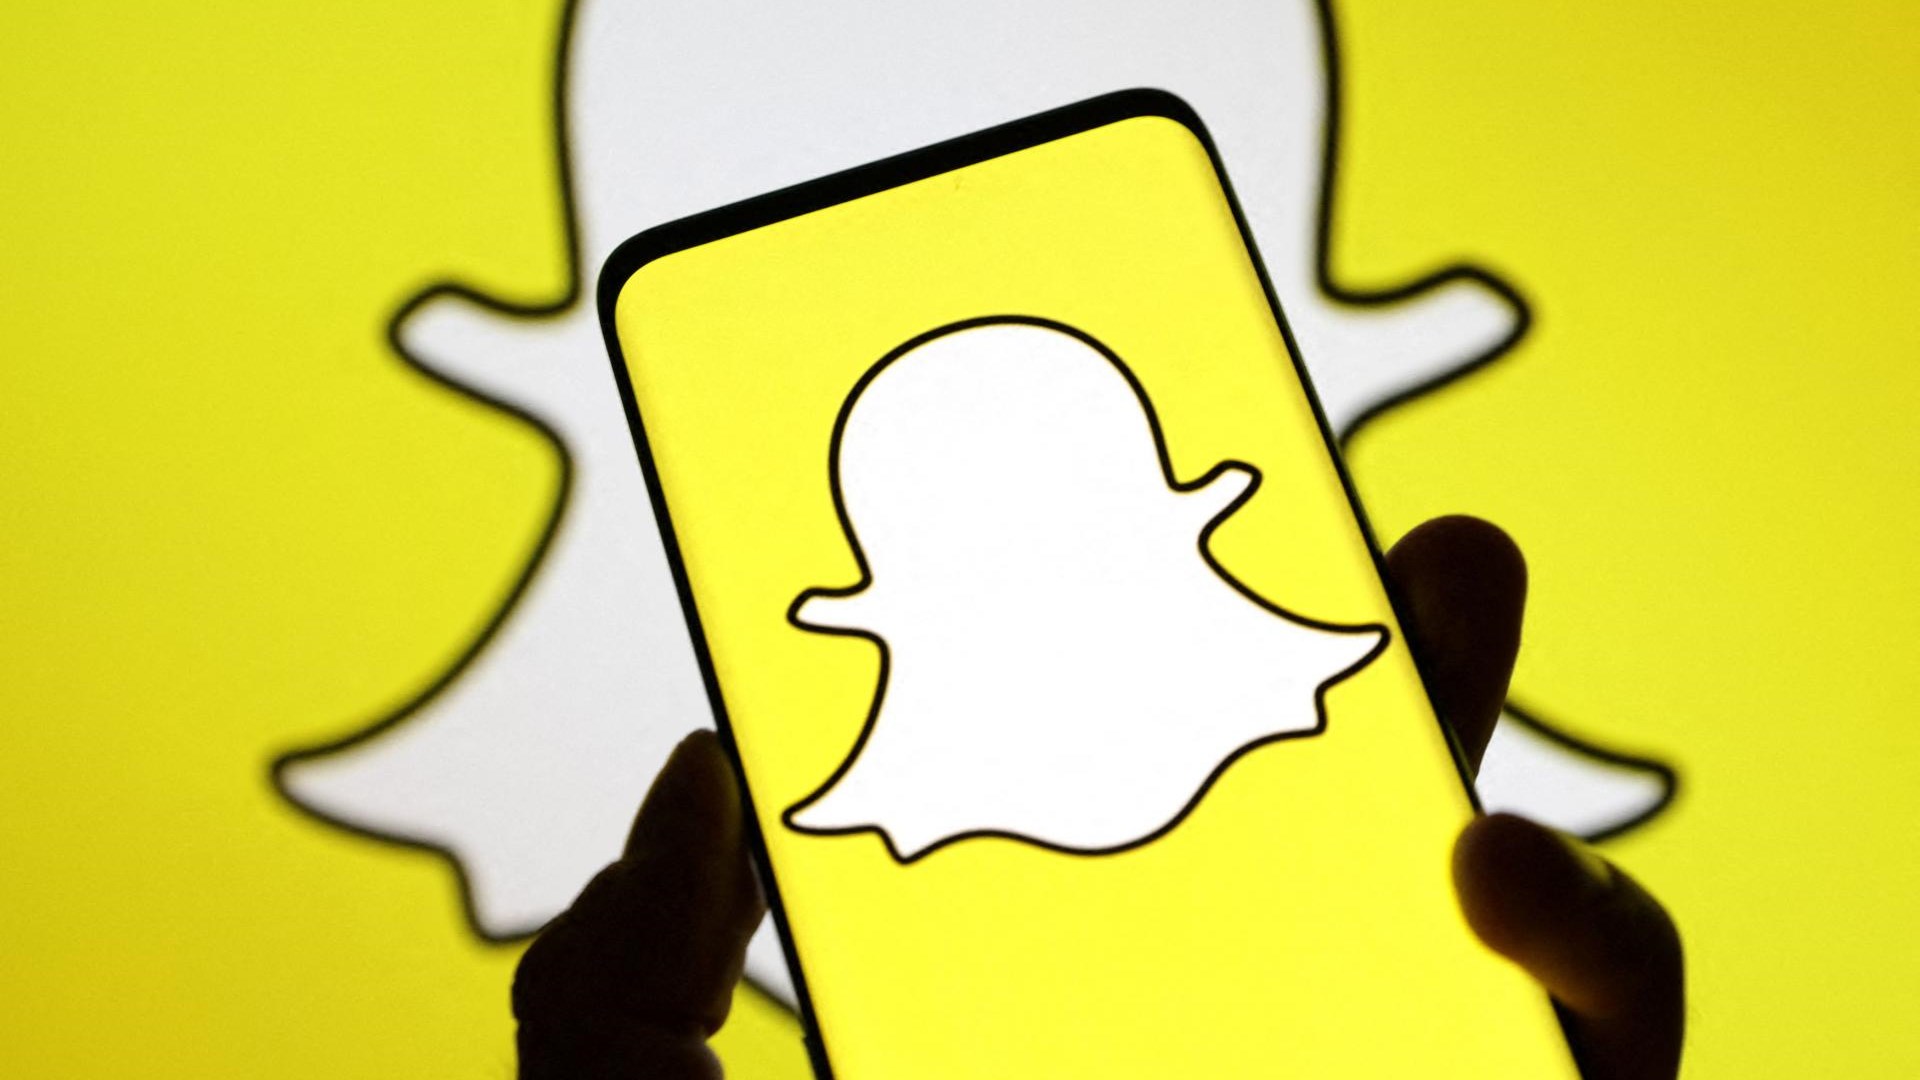 O Snapchat está lançando novos recursos para ajudar os pais a monitorar seus filhos adolescentes